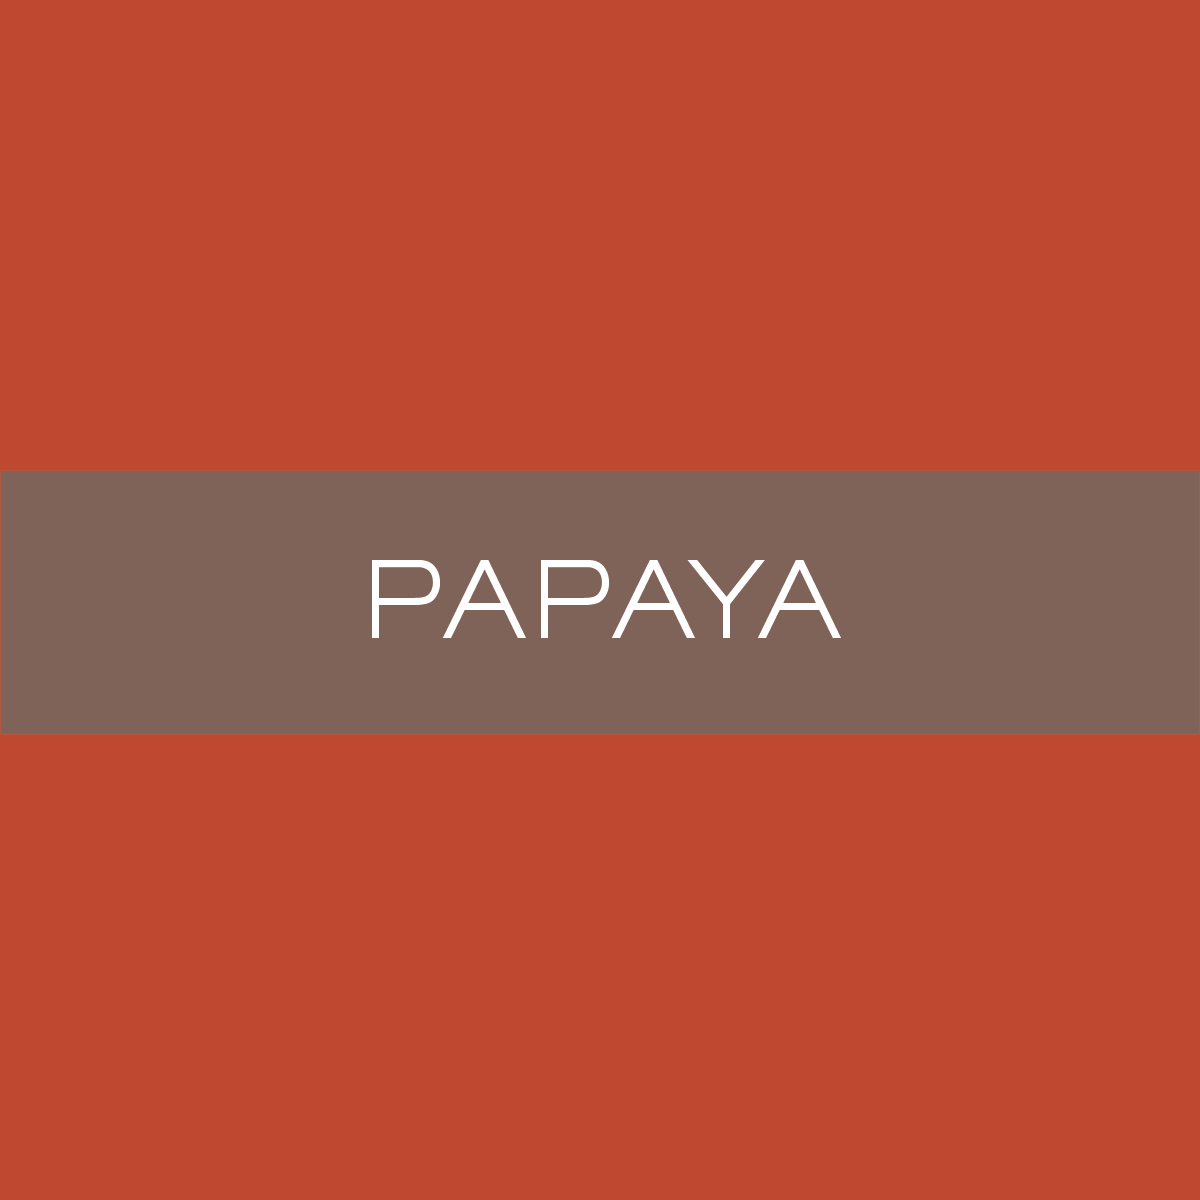 INK_Papaya.png